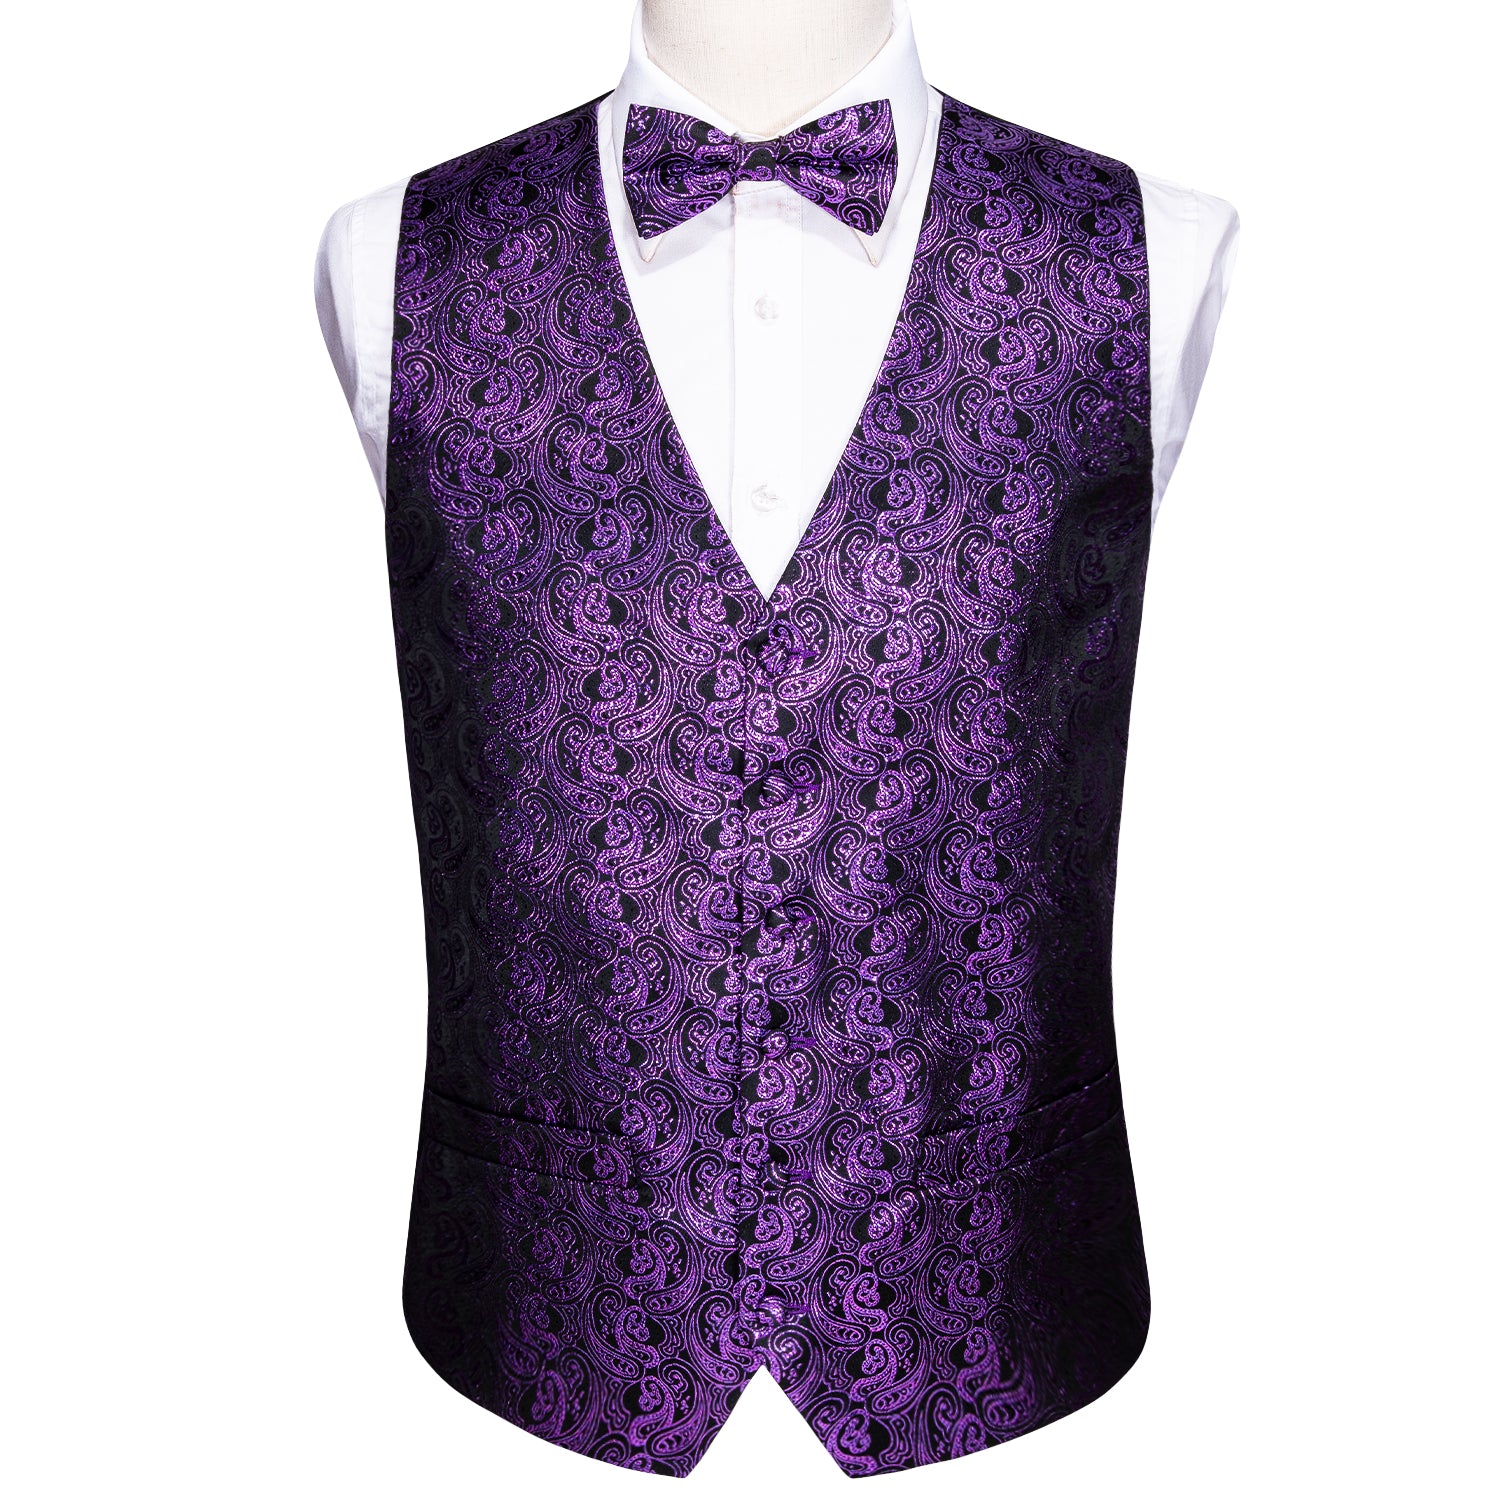 Barry.wang Men's Vest Black Purple Paisley Silk Vest Bow tie Pocket Square Cufflinks Set